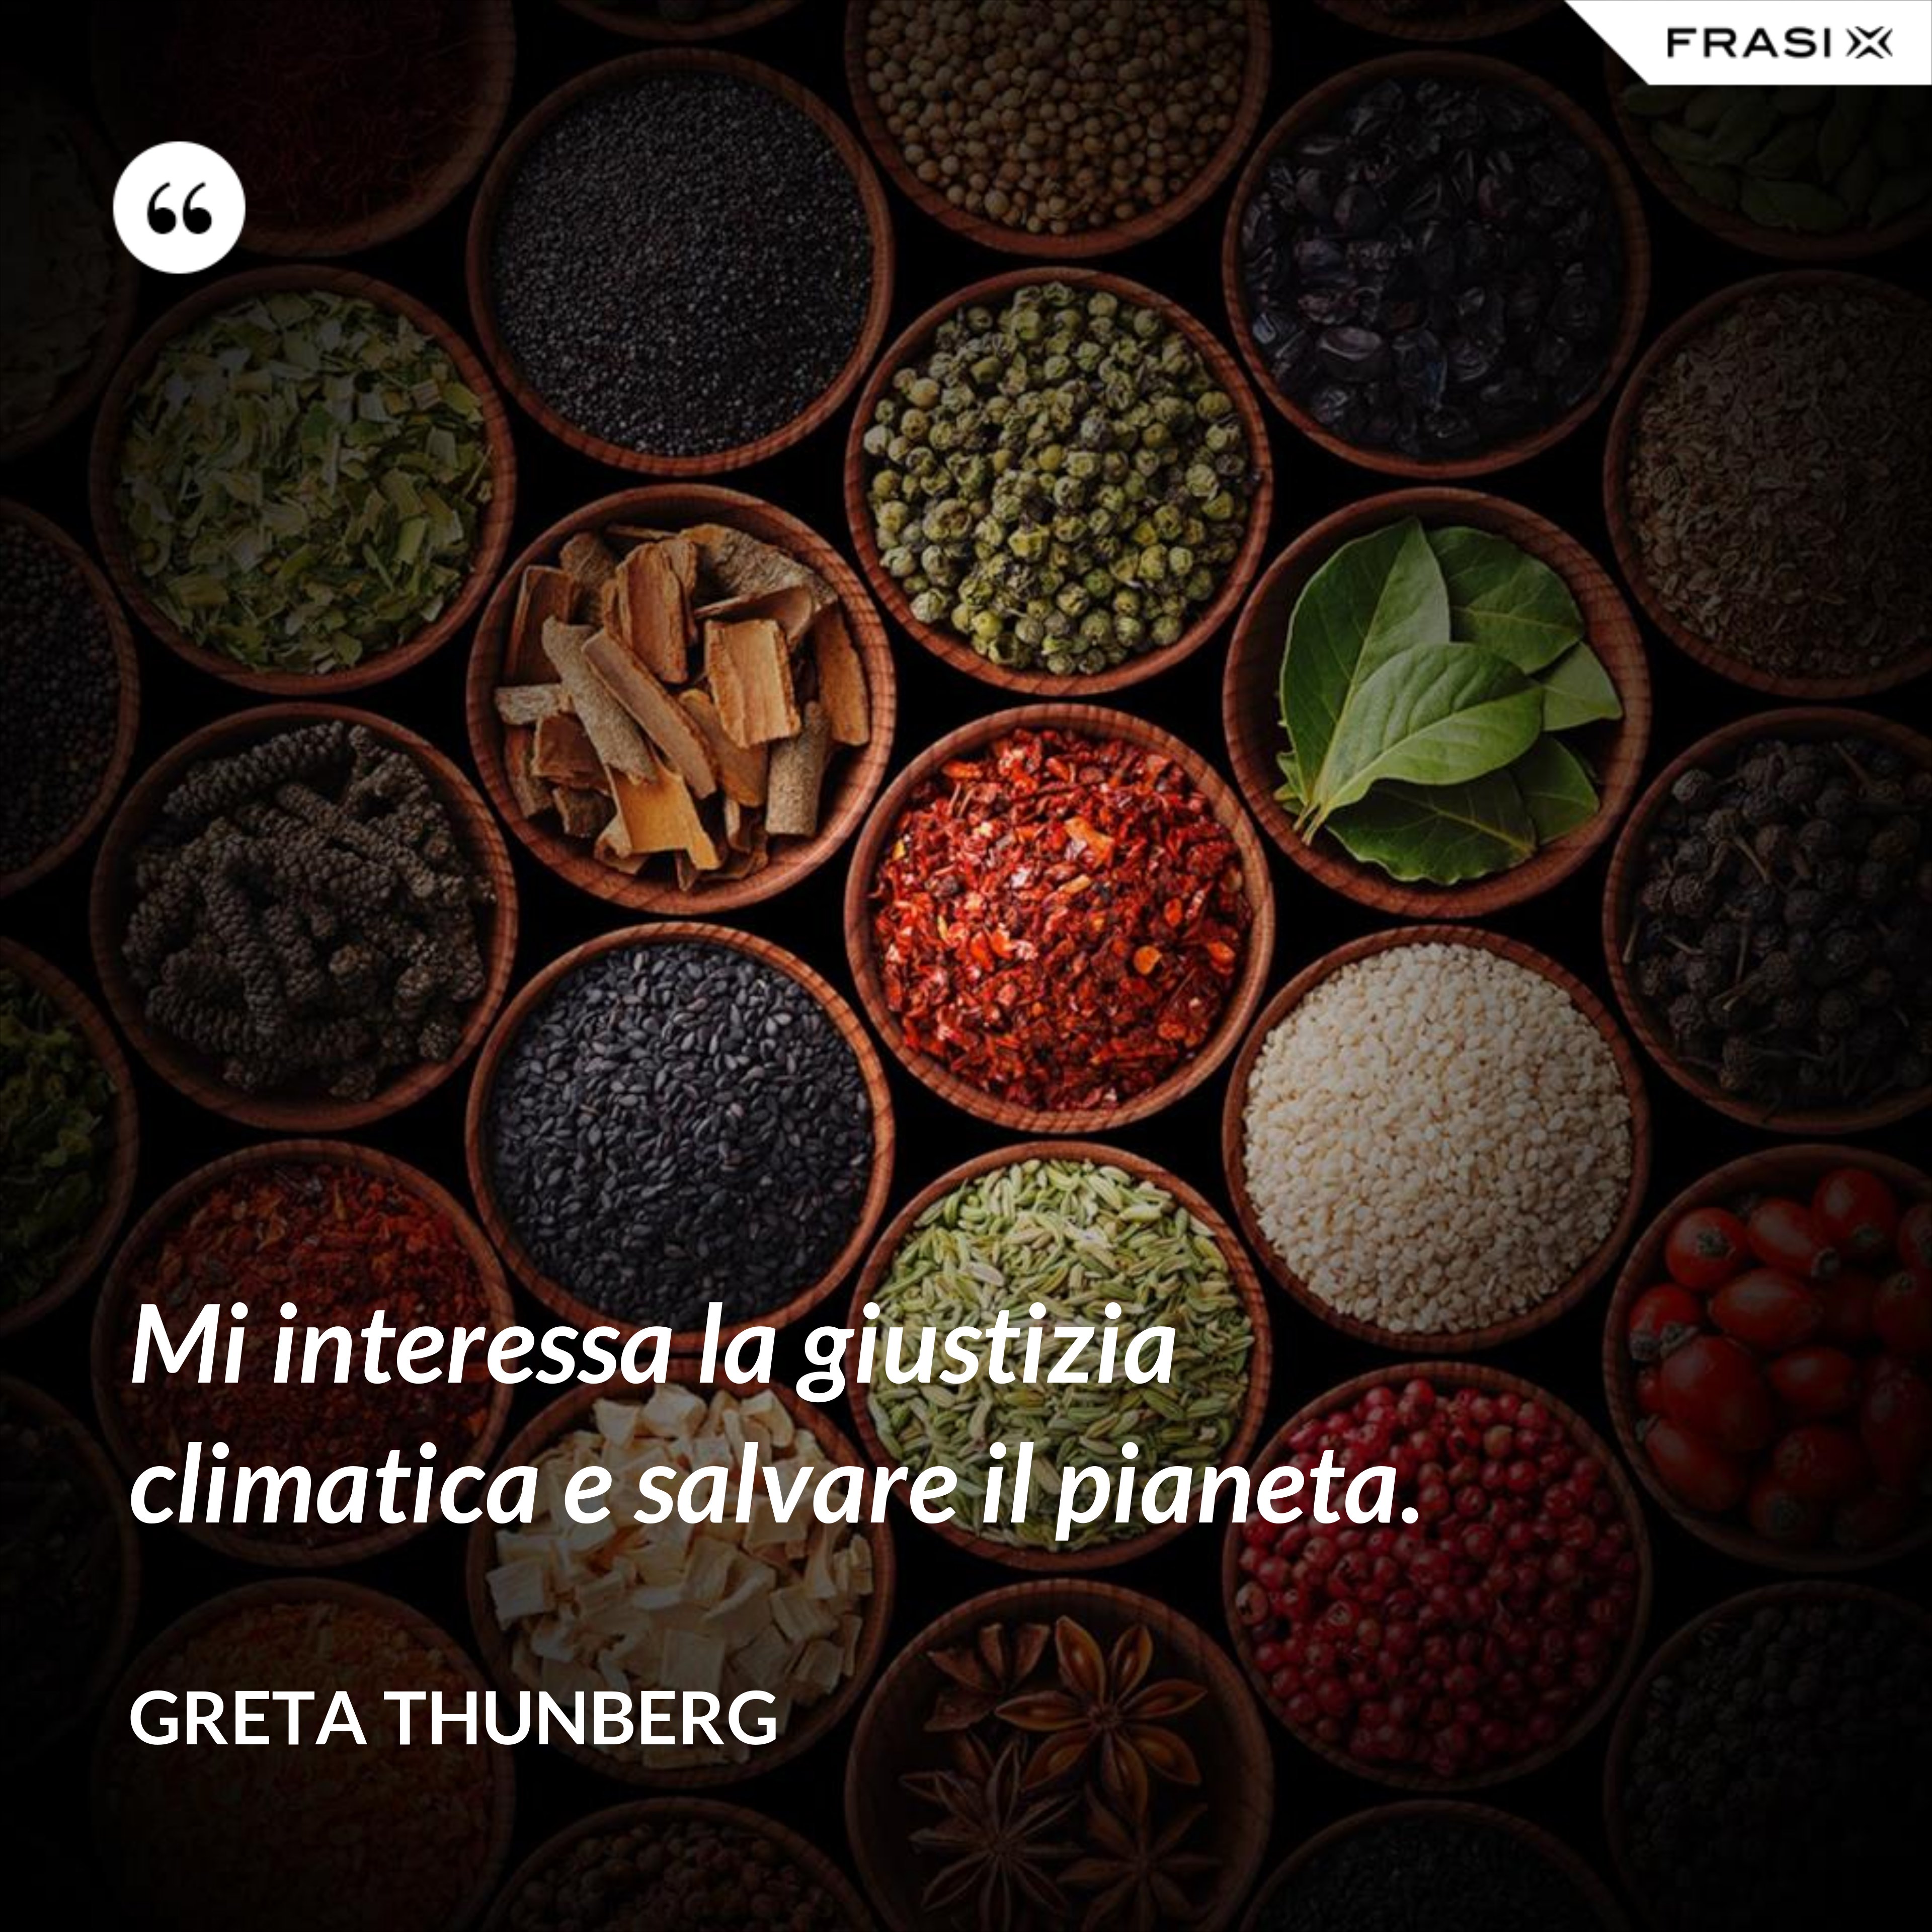 Mi interessa la giustizia climatica e salvare il pianeta. - Greta Thunberg